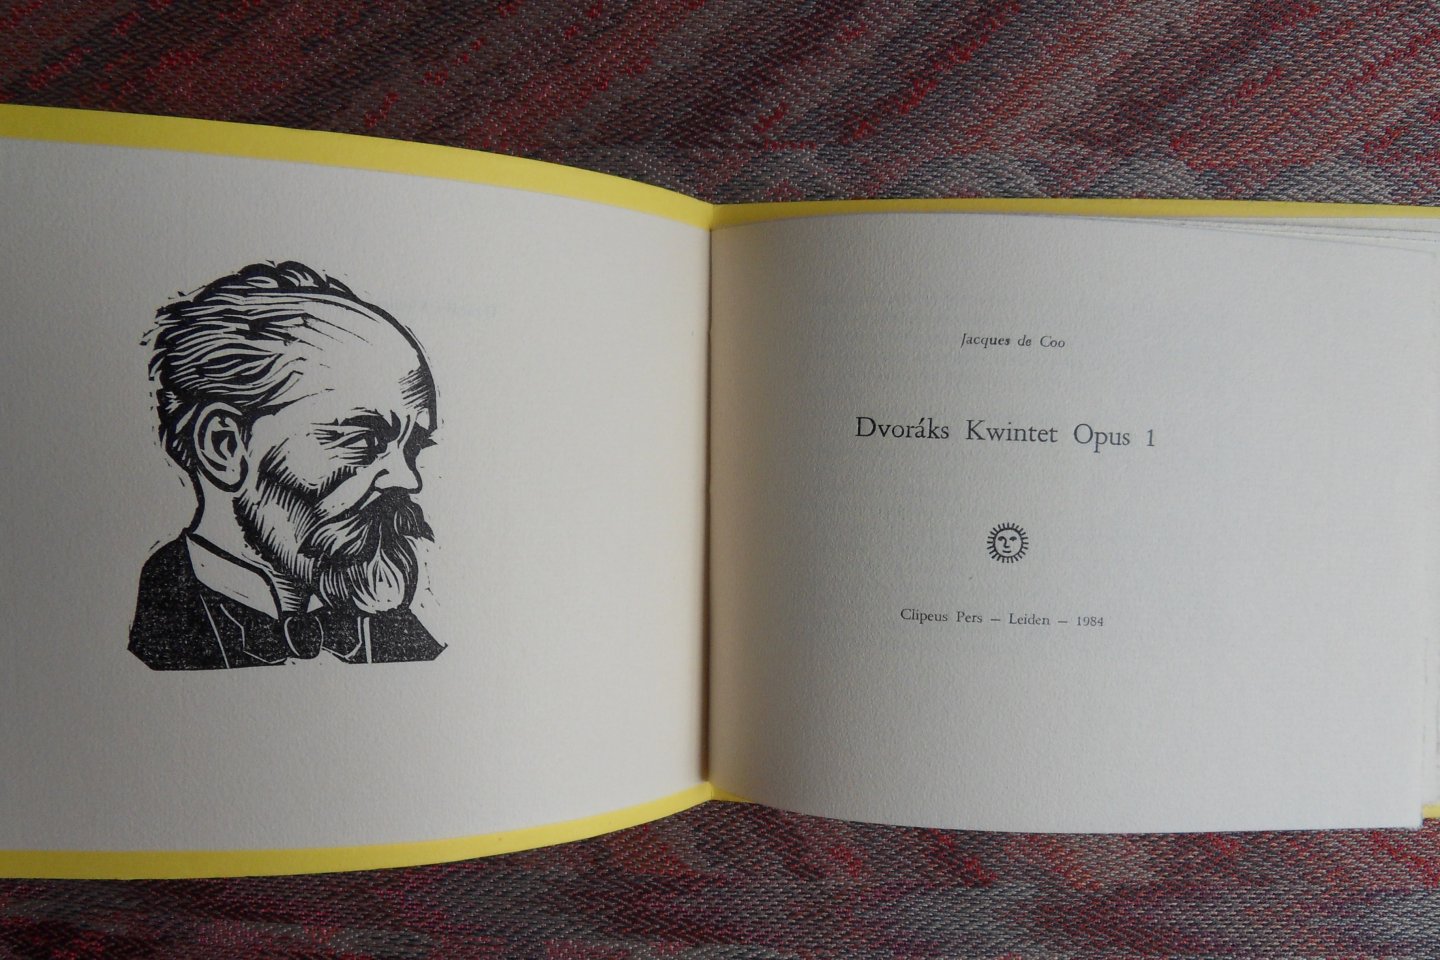 Coo, Jacques de. - Dvoraks Kwintet Opus 1. [ Beperkte bibliofiele oplage van 50 exemplaren ].